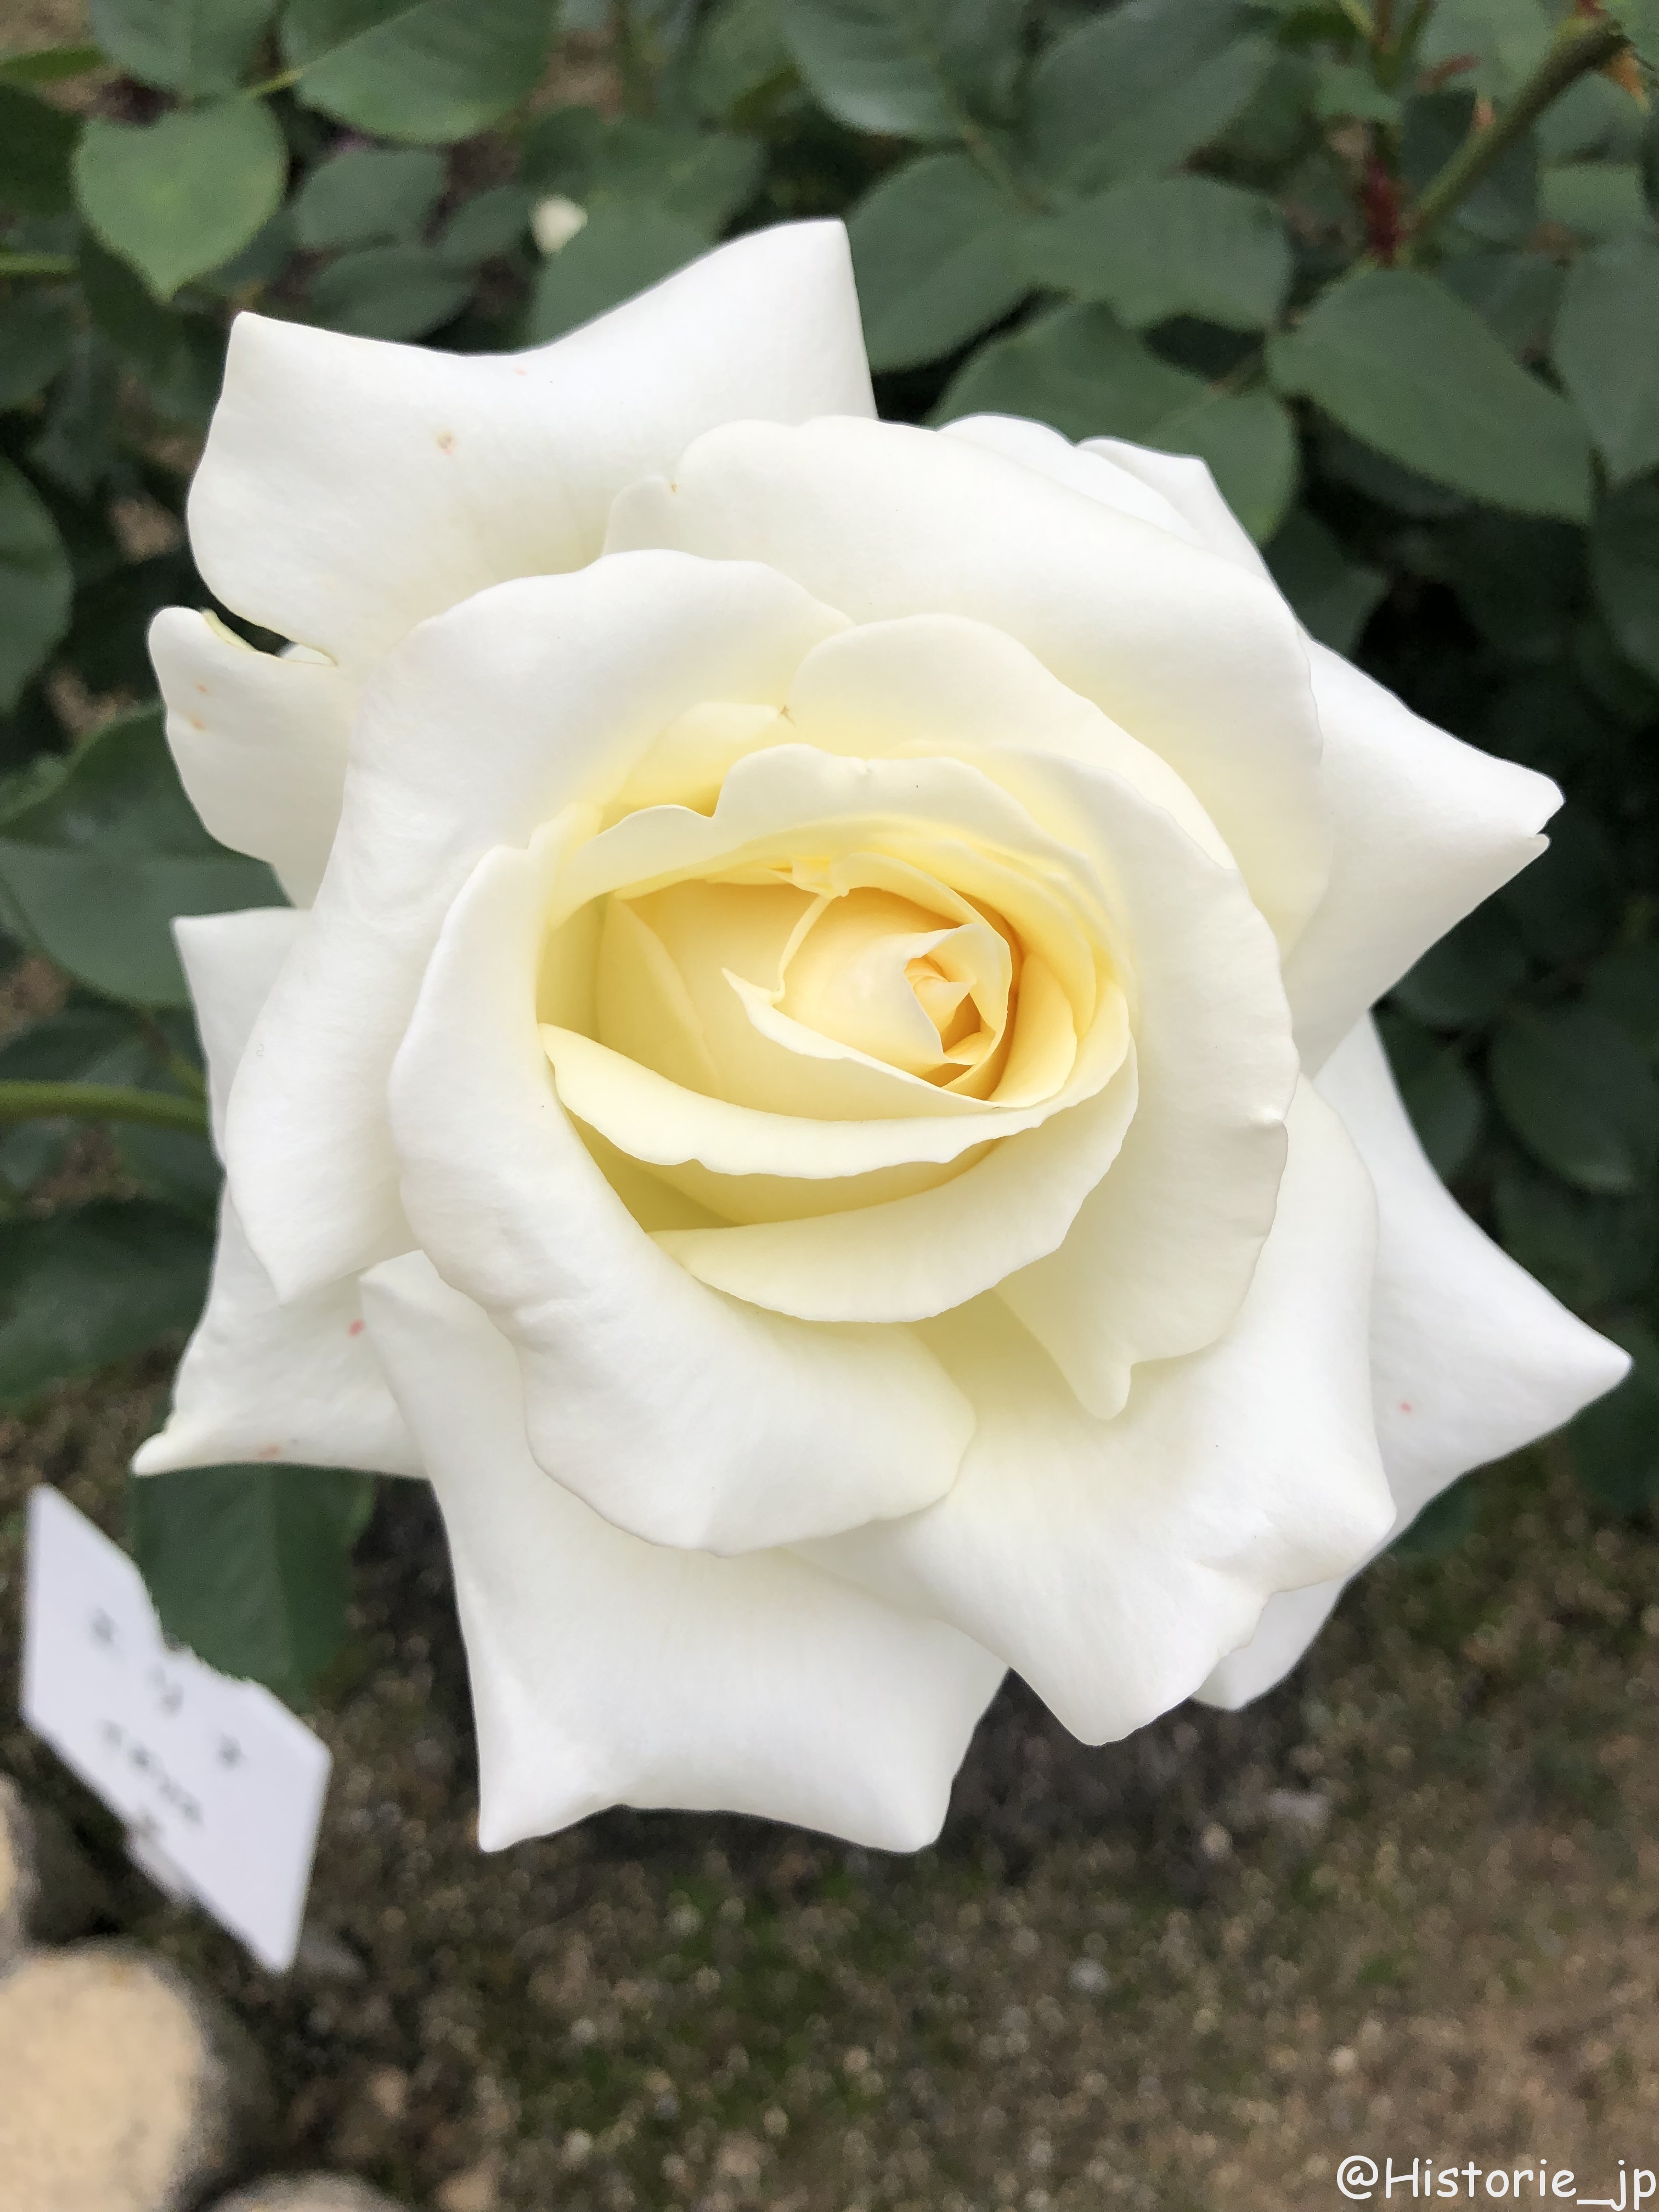 [奈良・中町] 世界平和への祈りを込めた霊山寺のバラ庭園・200種類2000株のバラが咲き誇る